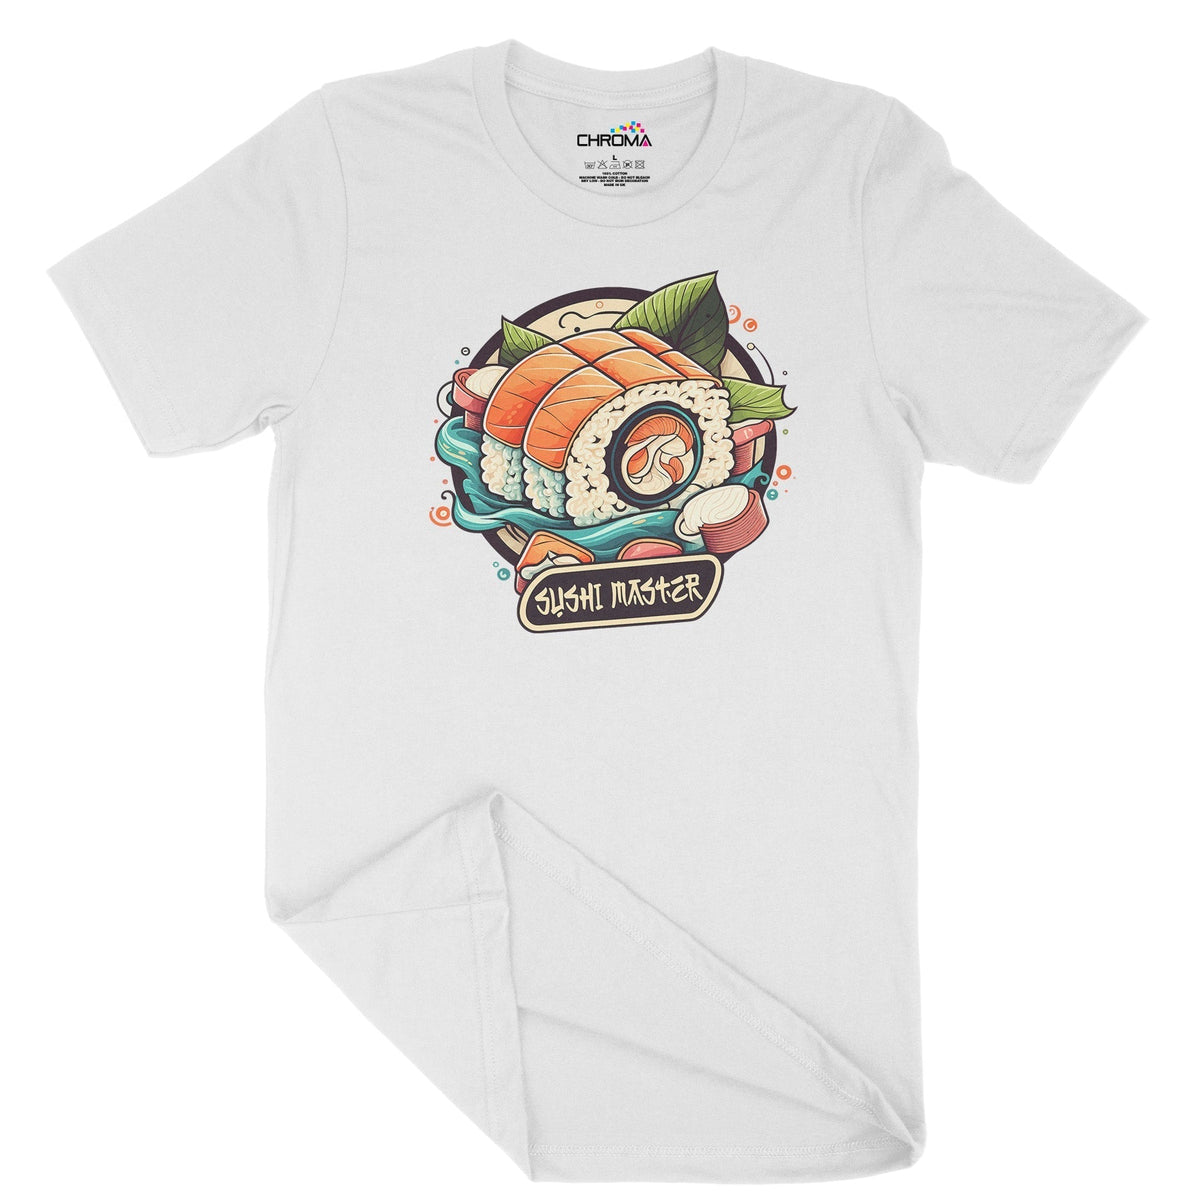 Sushi Master Unisex Adult T-Shirt Chroma Clothing